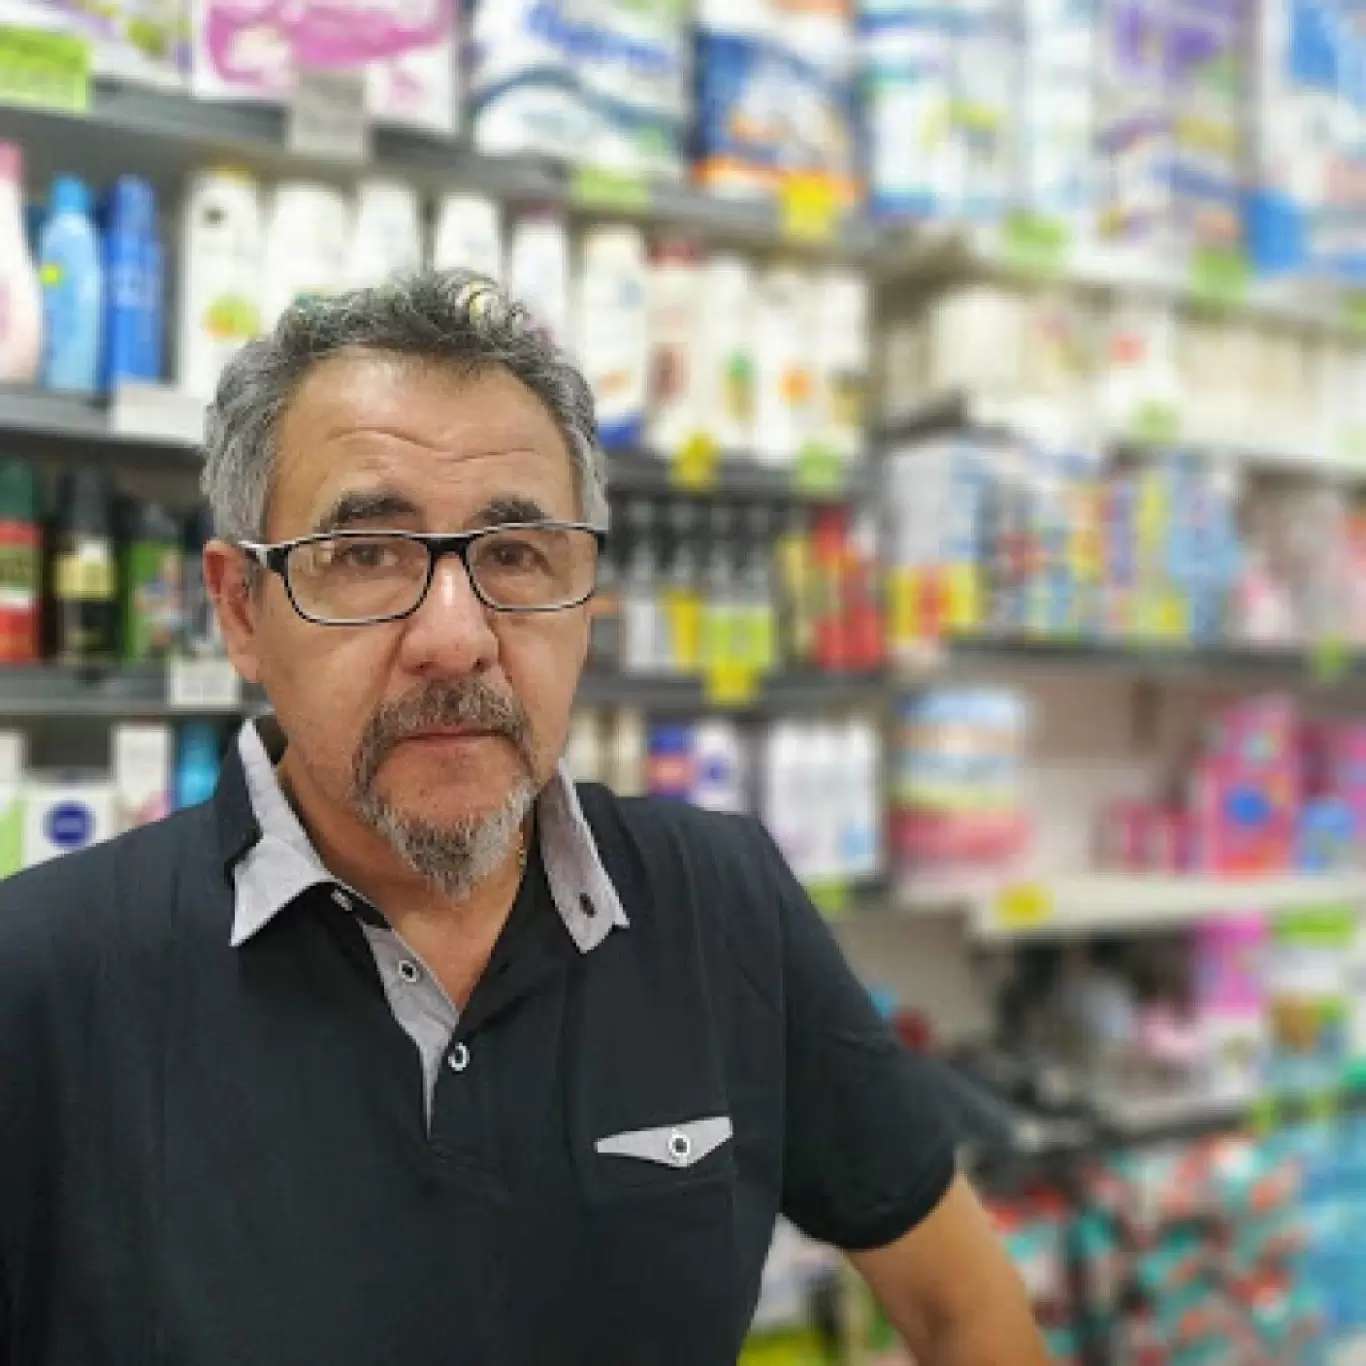 Fernando Savore, de la Federación de Almaceneros bonaerenses: "El paquete de azúcar ya hay que venderlo a $ 1700"